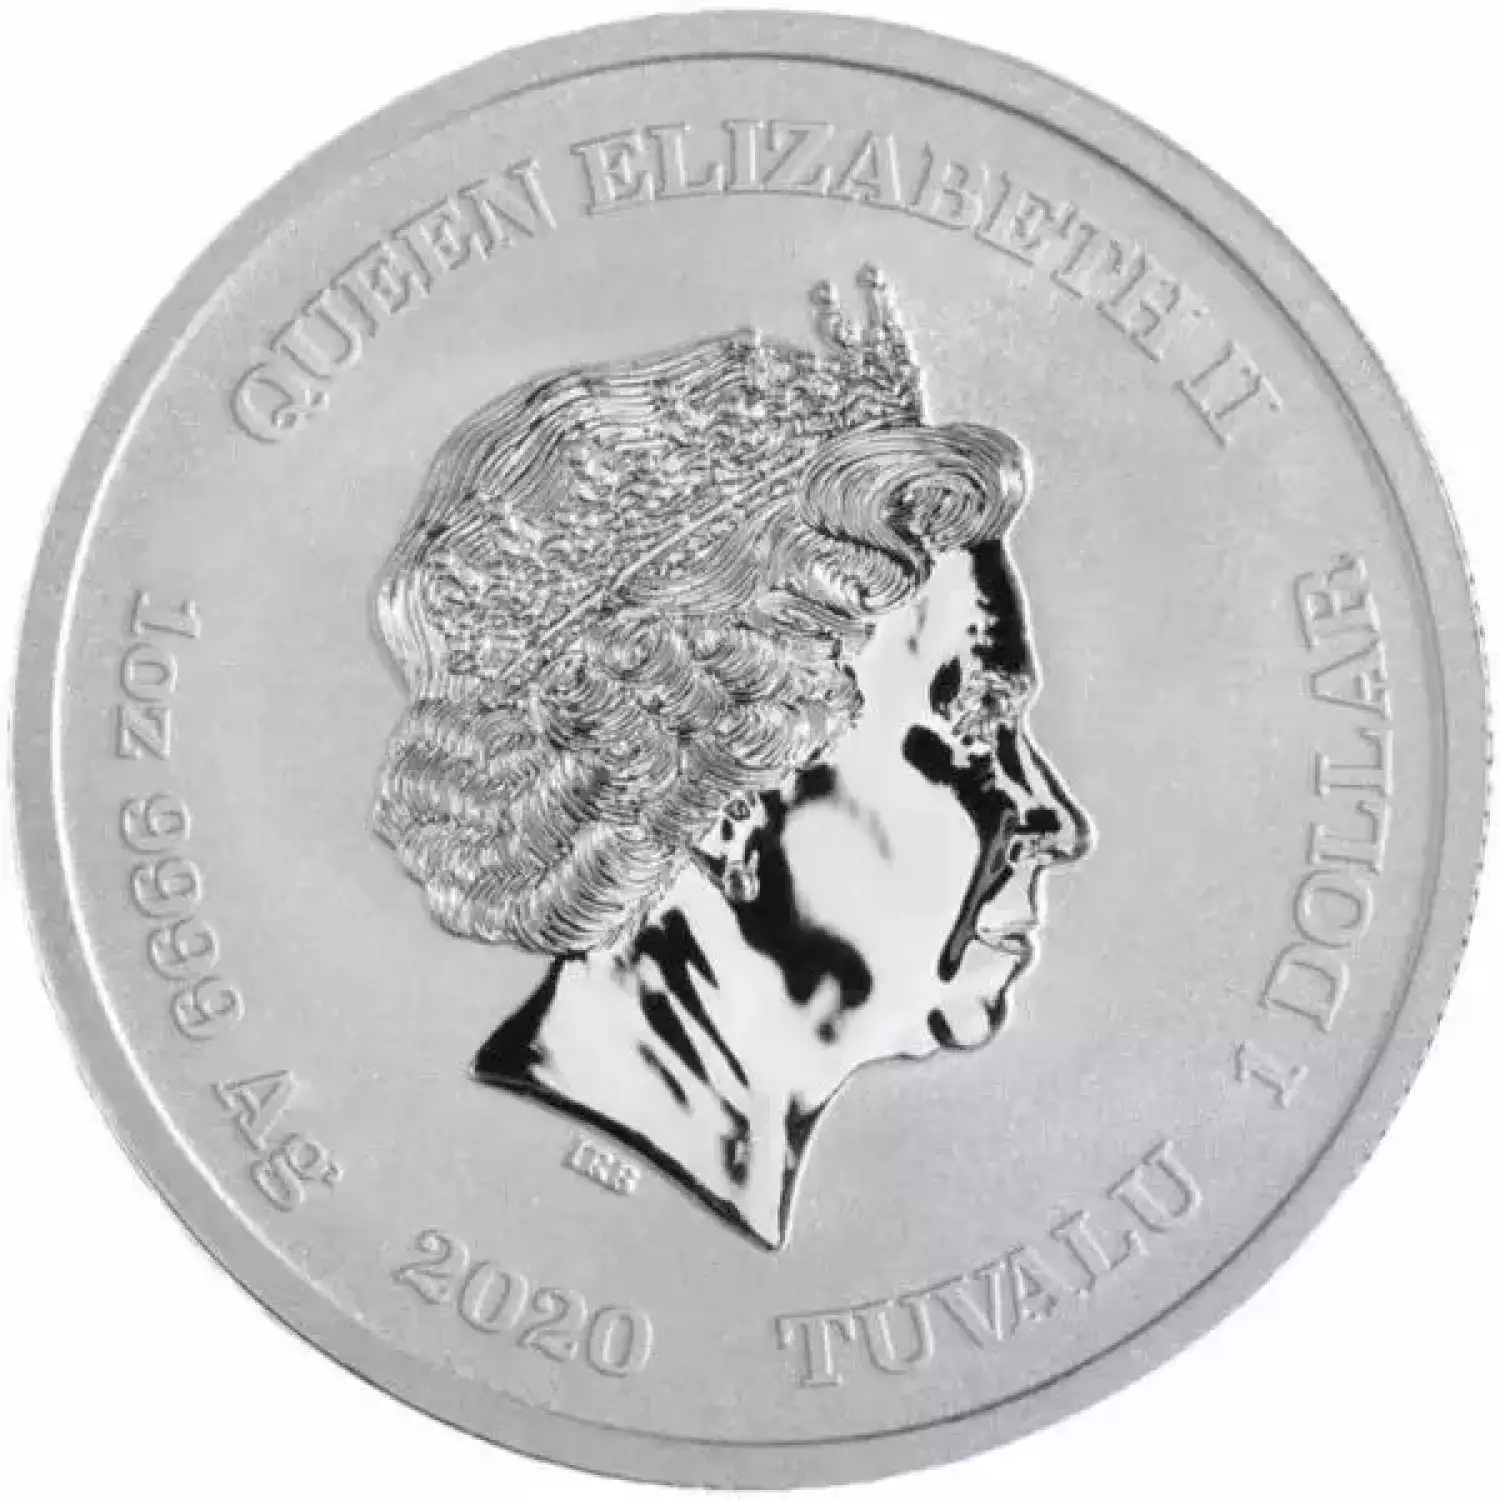 2020 Tuvalu $1 1oz Silver 75th Anniversary Iwo Jima Coin